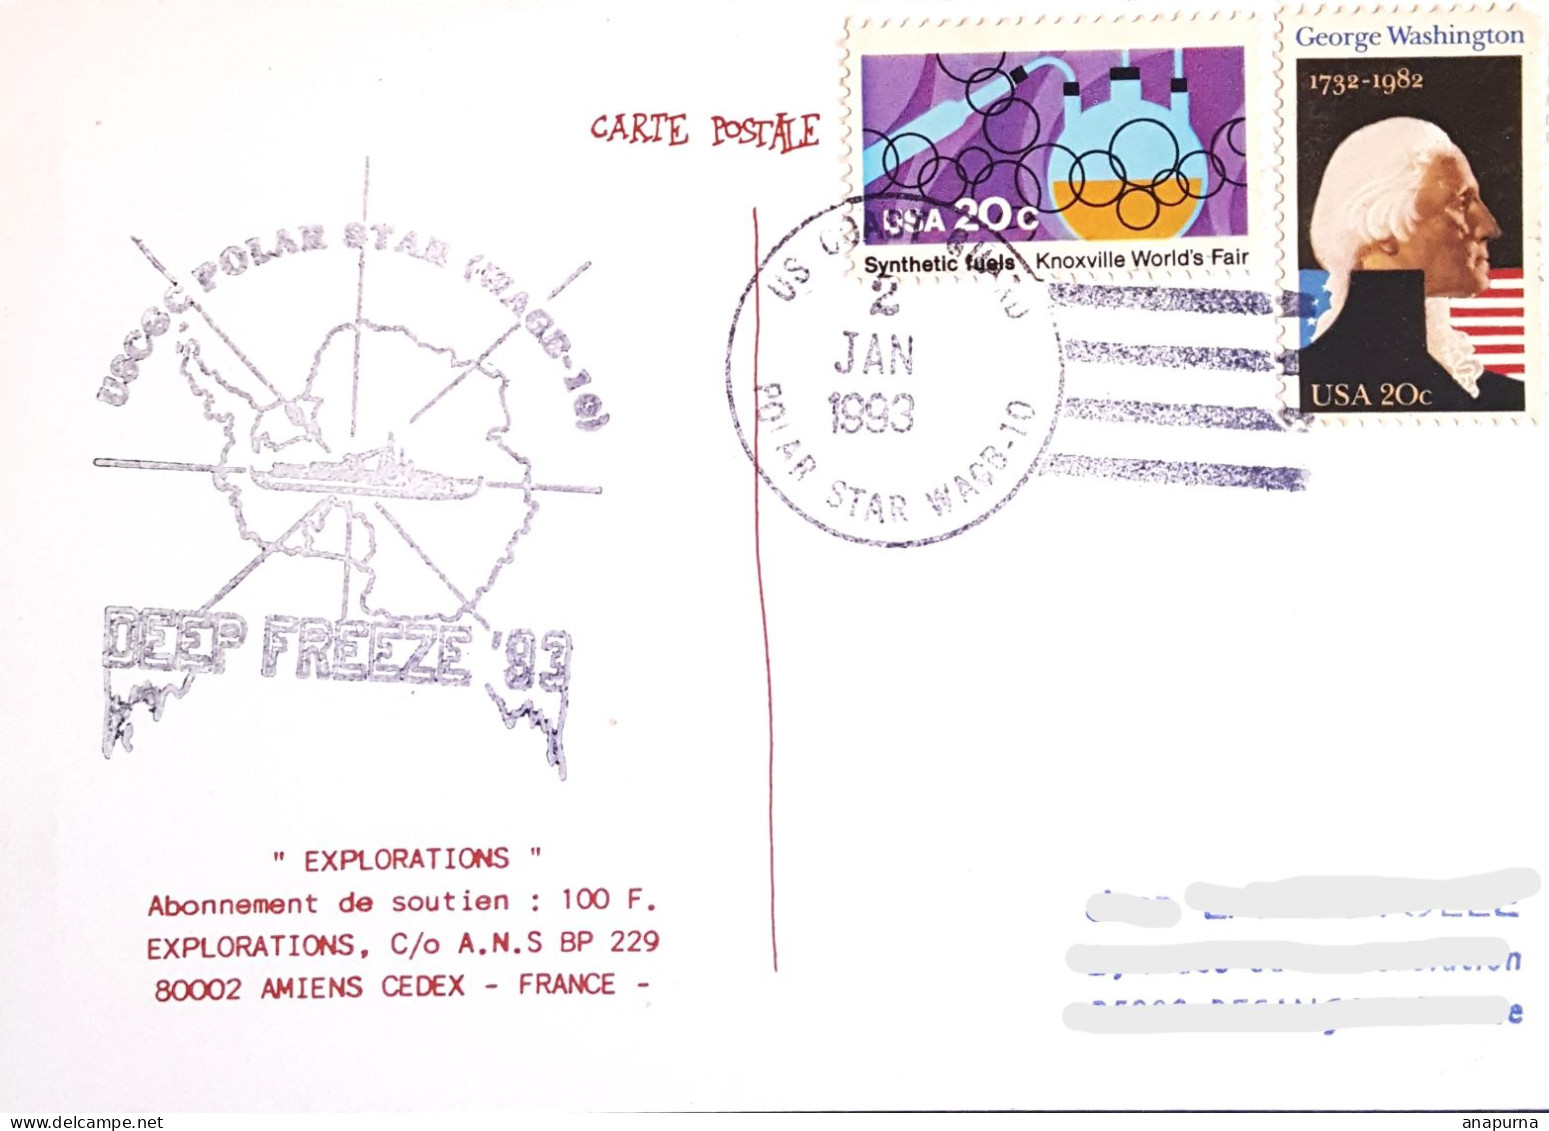 Carte Postale, Posté à Bord Polar Star, Deep Freeze 93, Antarctic, Antarctique, Polaire, Expédition - Programas De Investigación